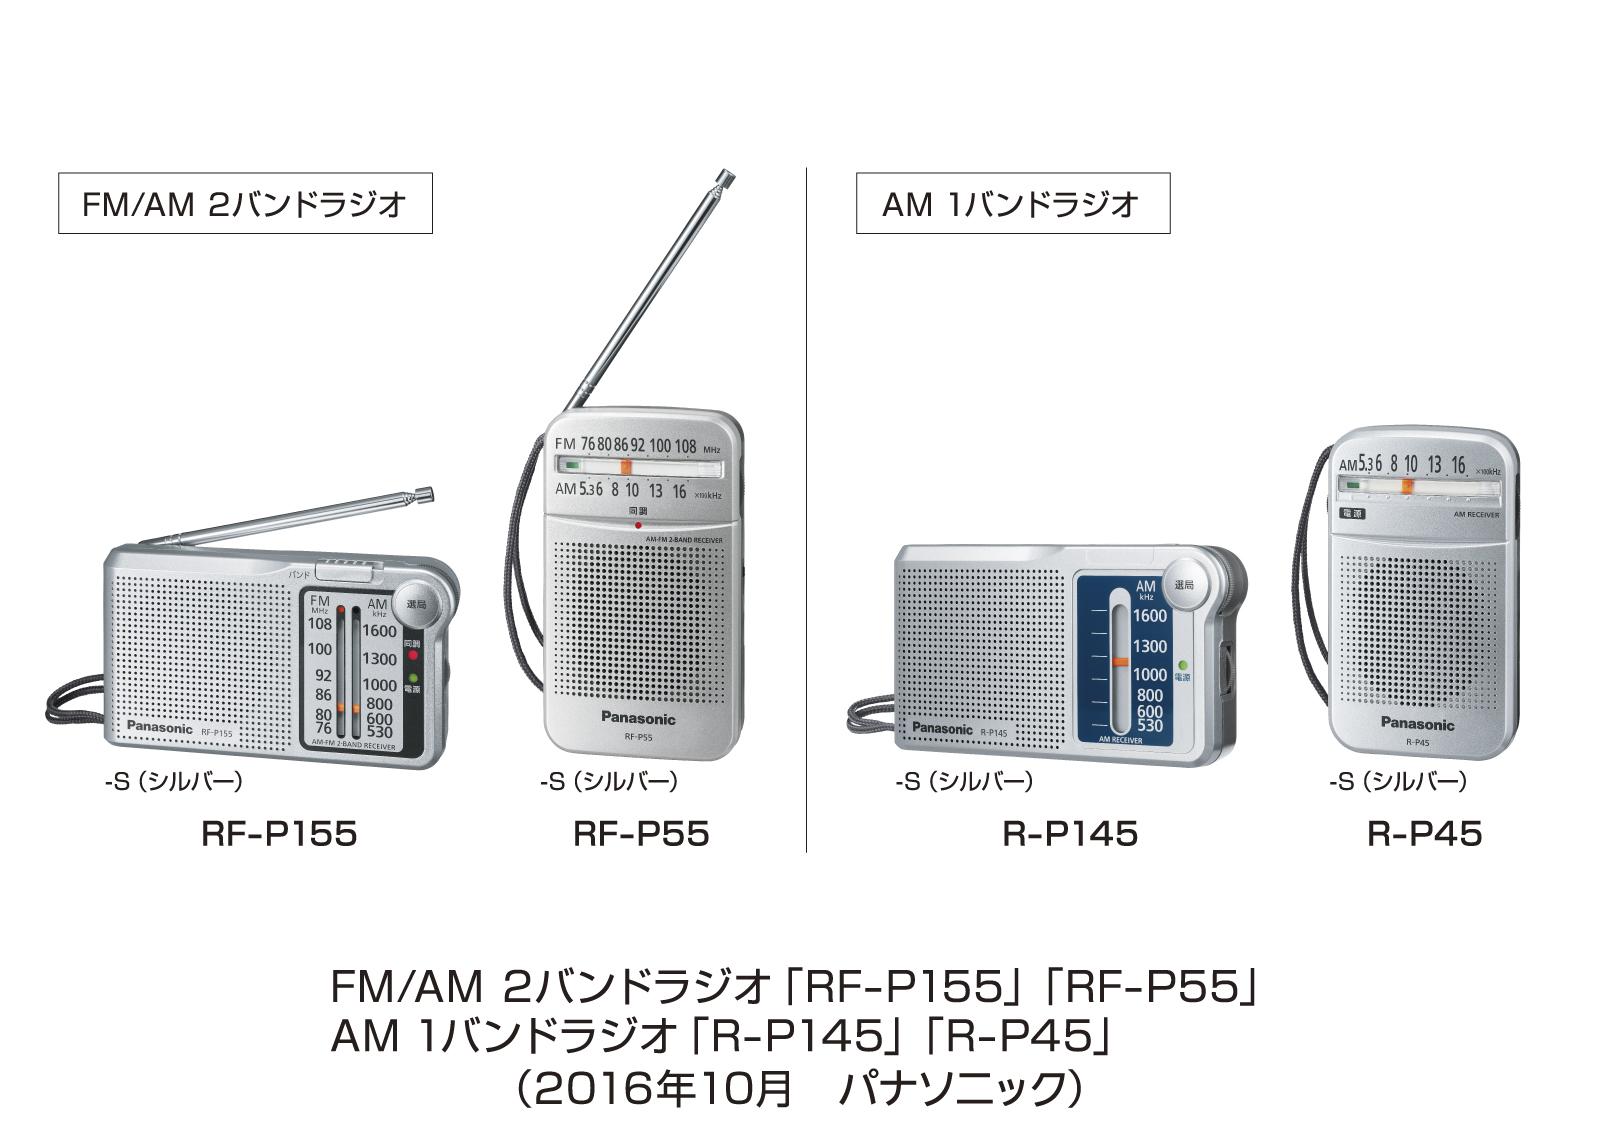 FM/AM 2バンドラジオ「RF-P155」「RF-P55」、AM 1バンドラジオ「R-P145」「R-P45」